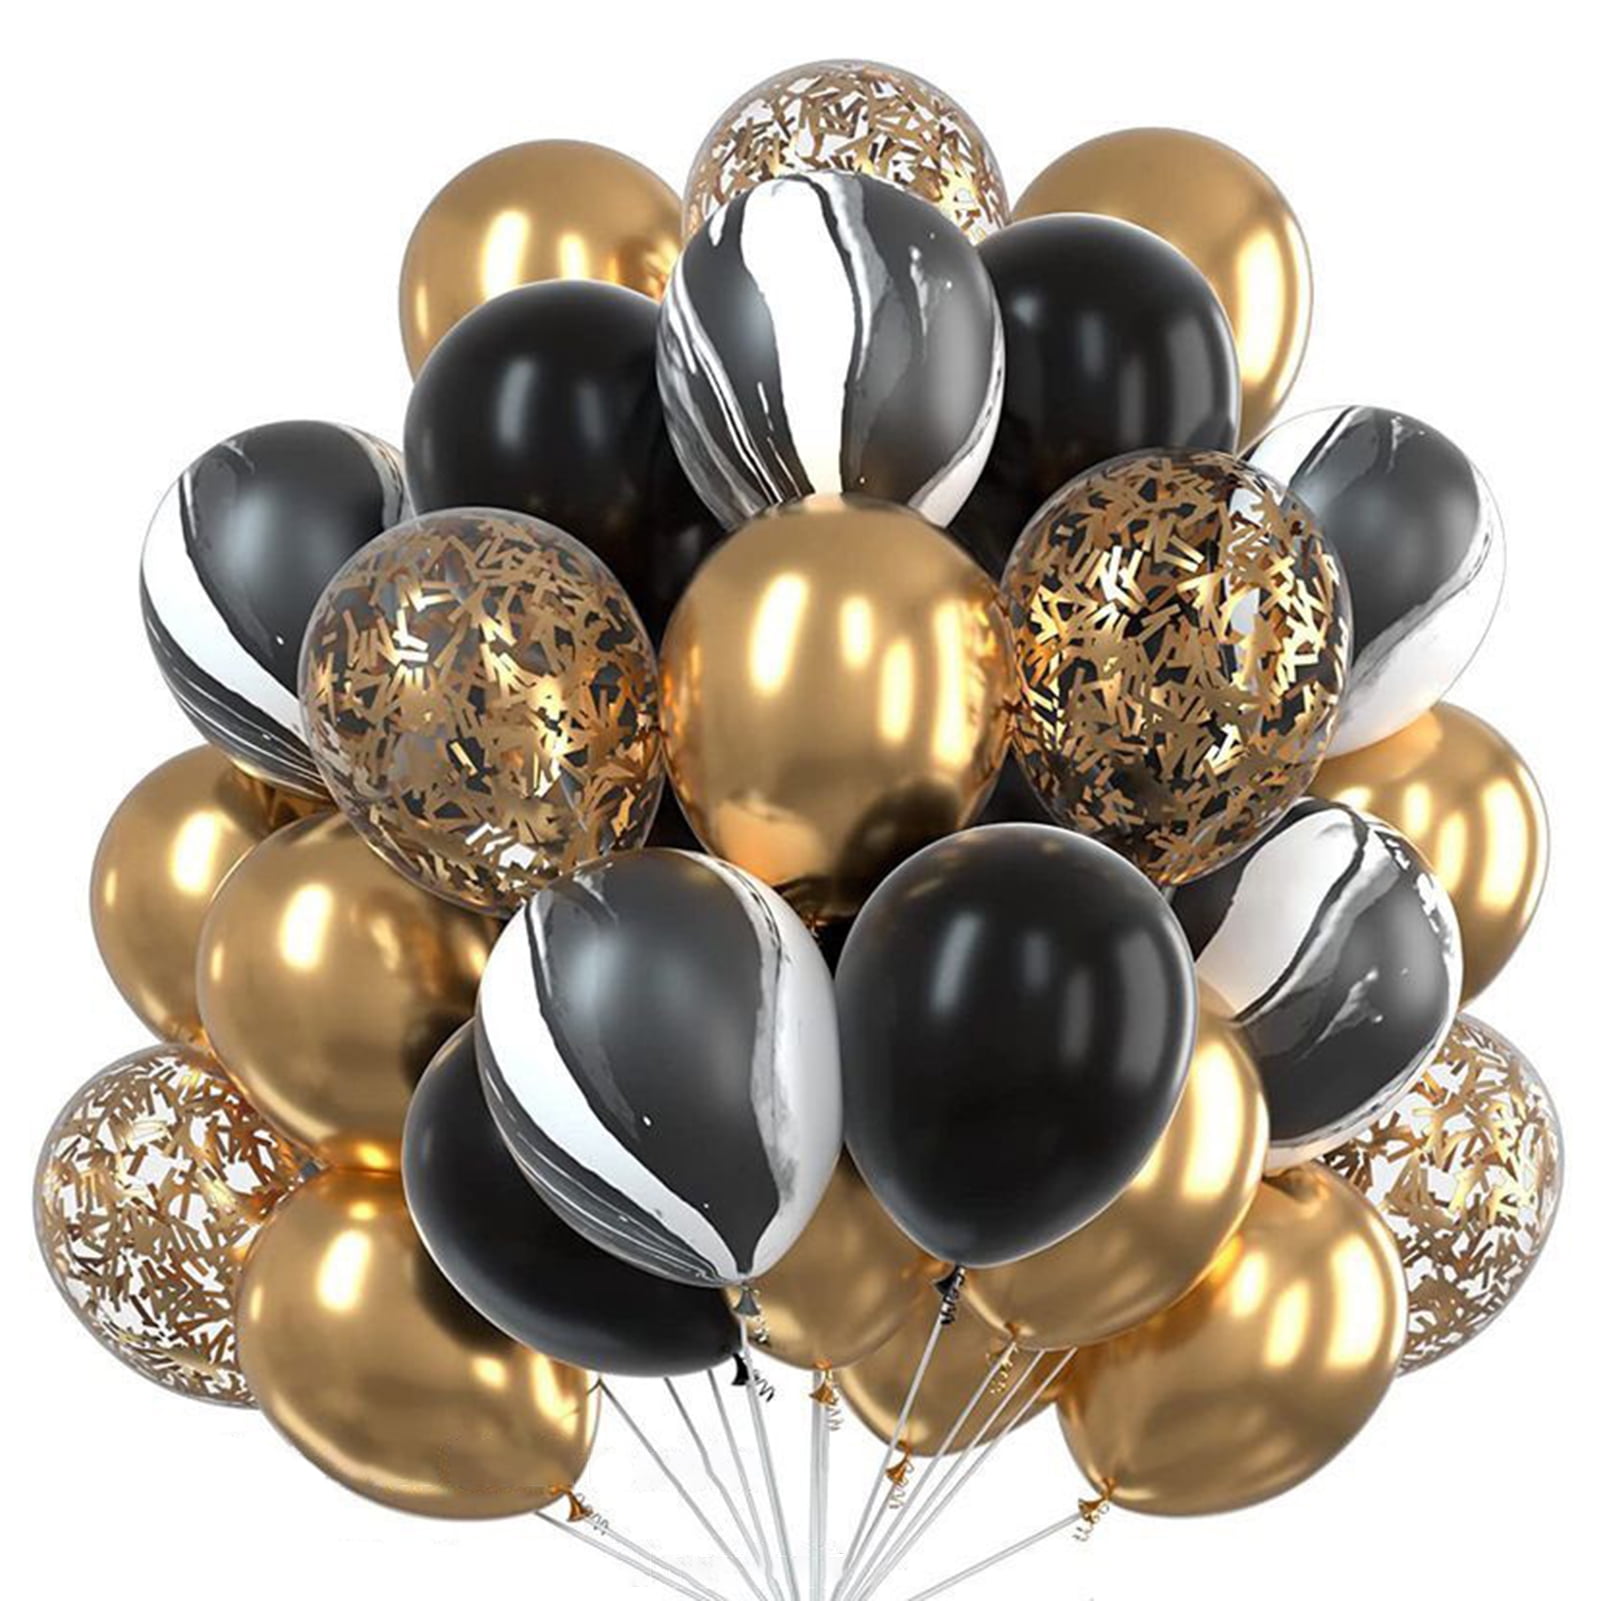 Jumbo Confetti Balloon & Tassel Tail - Black, White & Gold